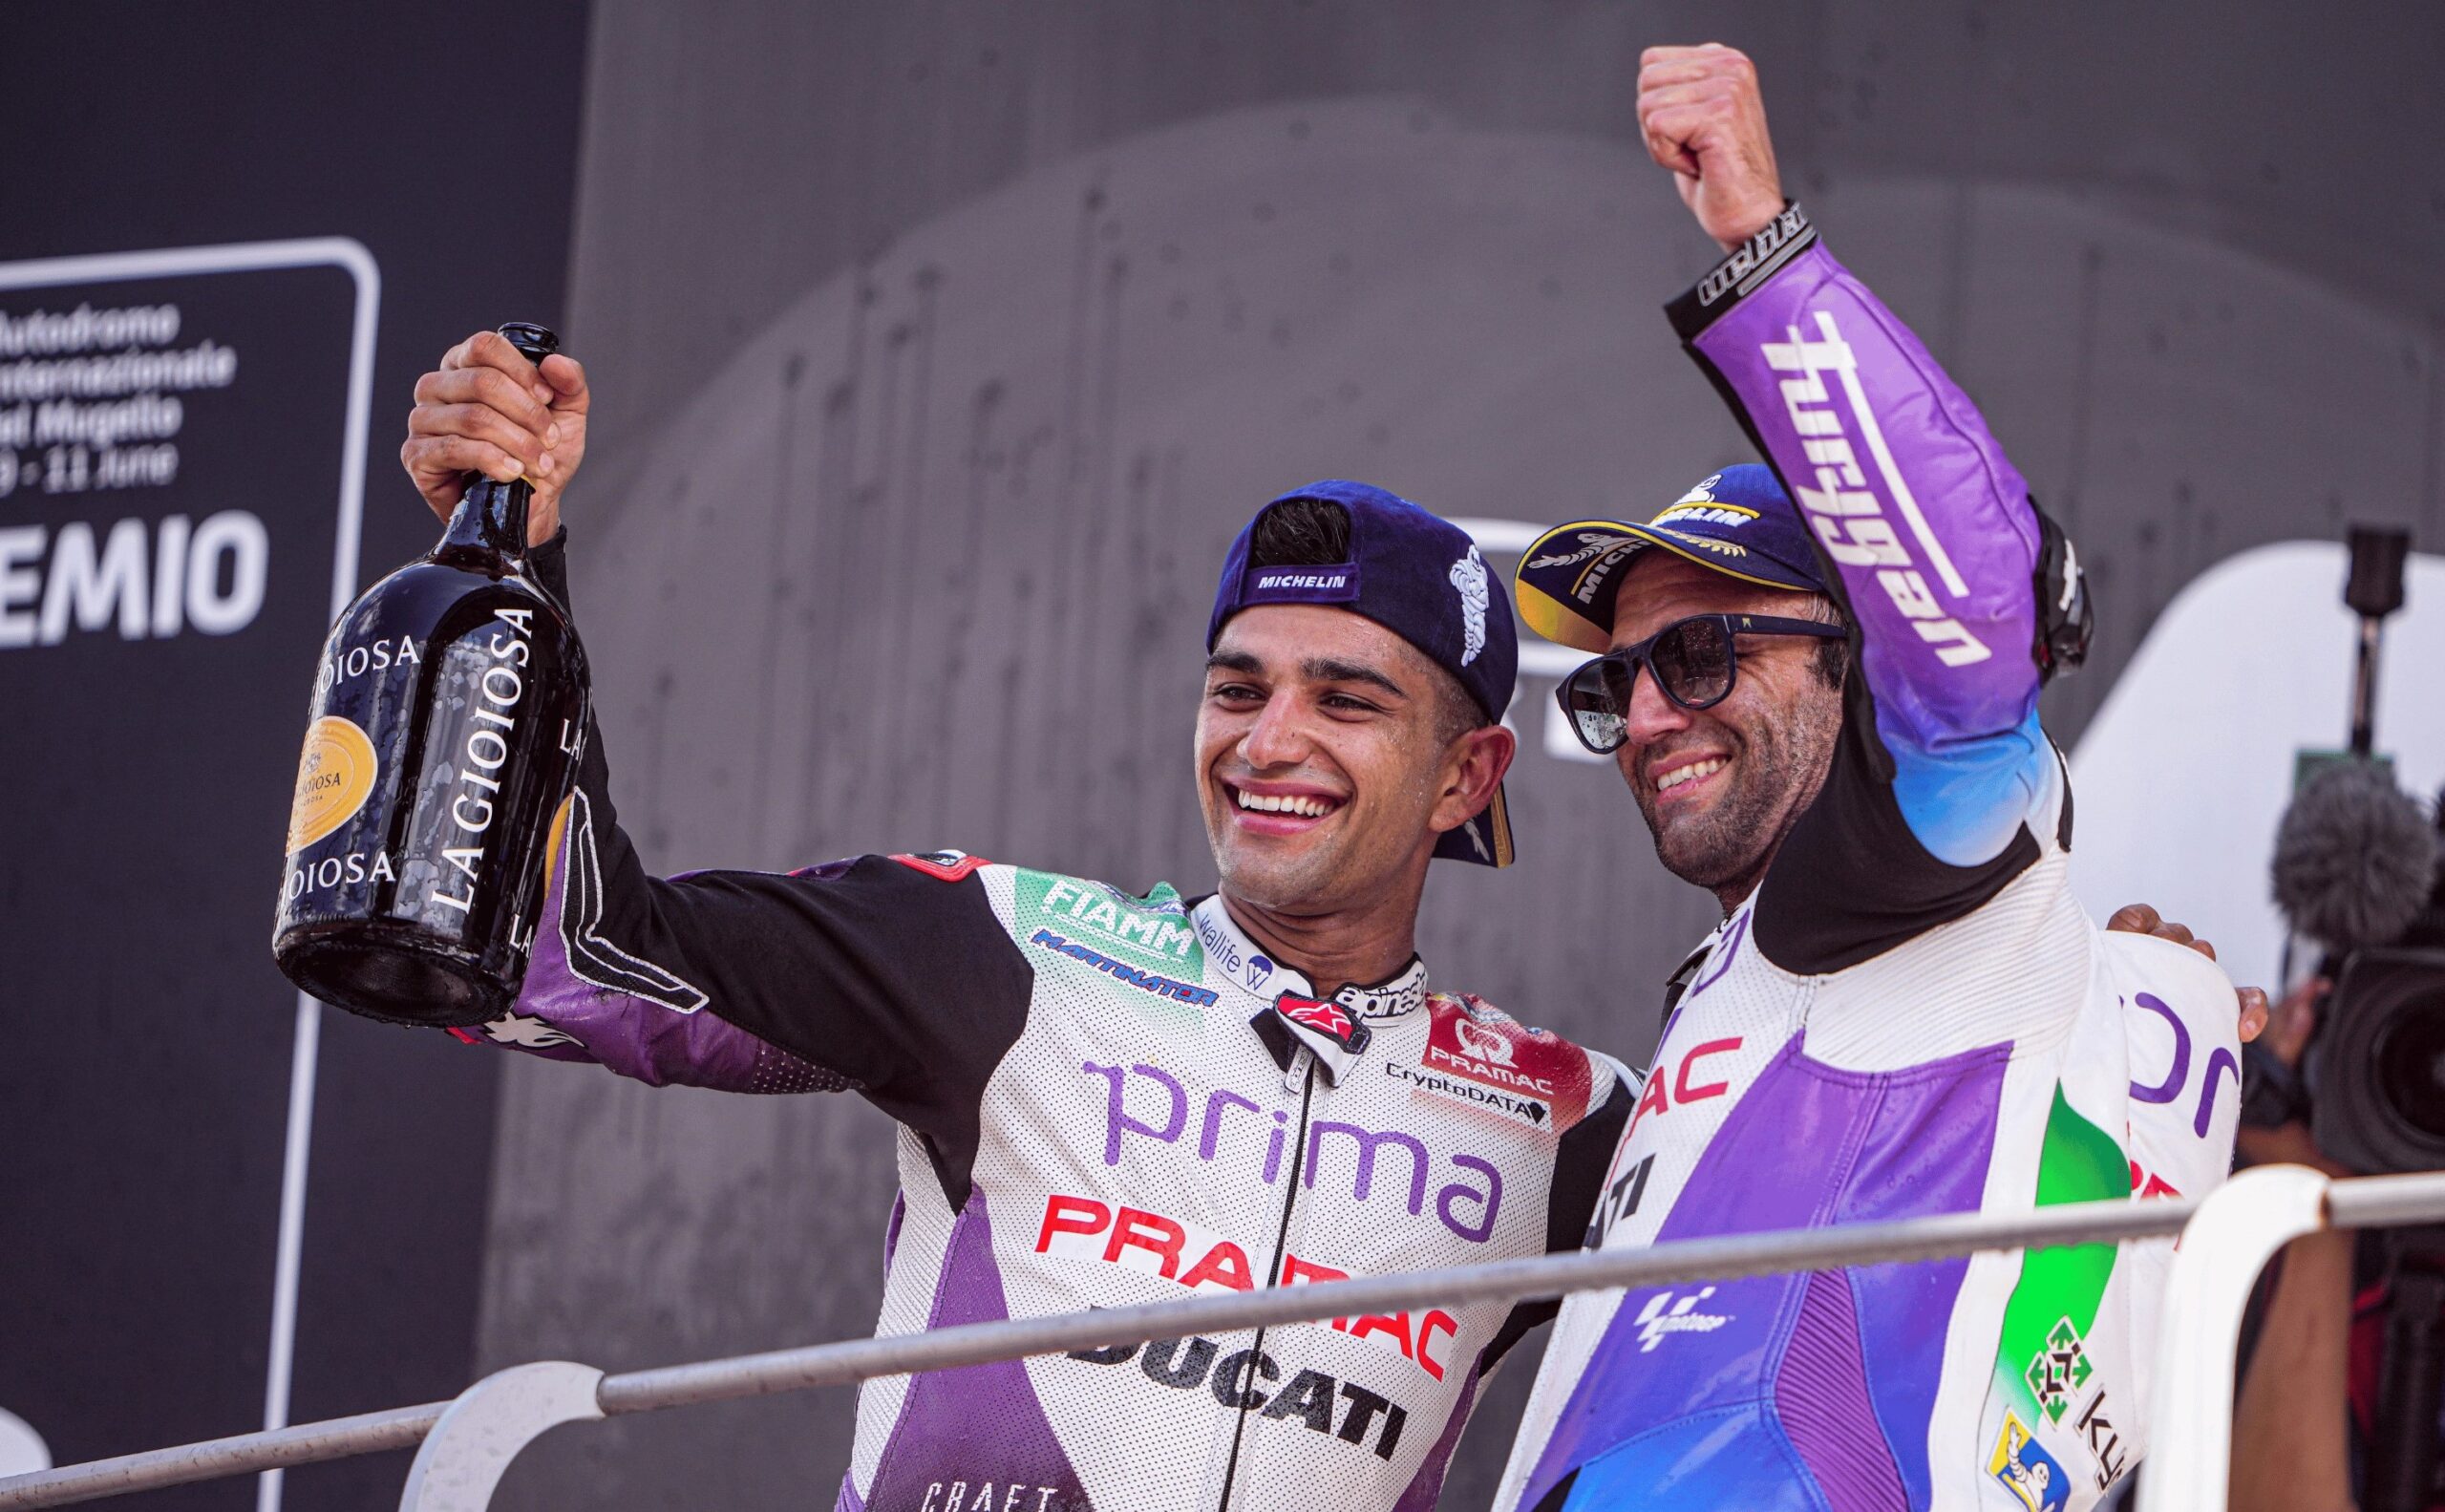 L’evento storico, in MotoGP, portato avanti dal team Pramac Ducati con Martín e Zarco